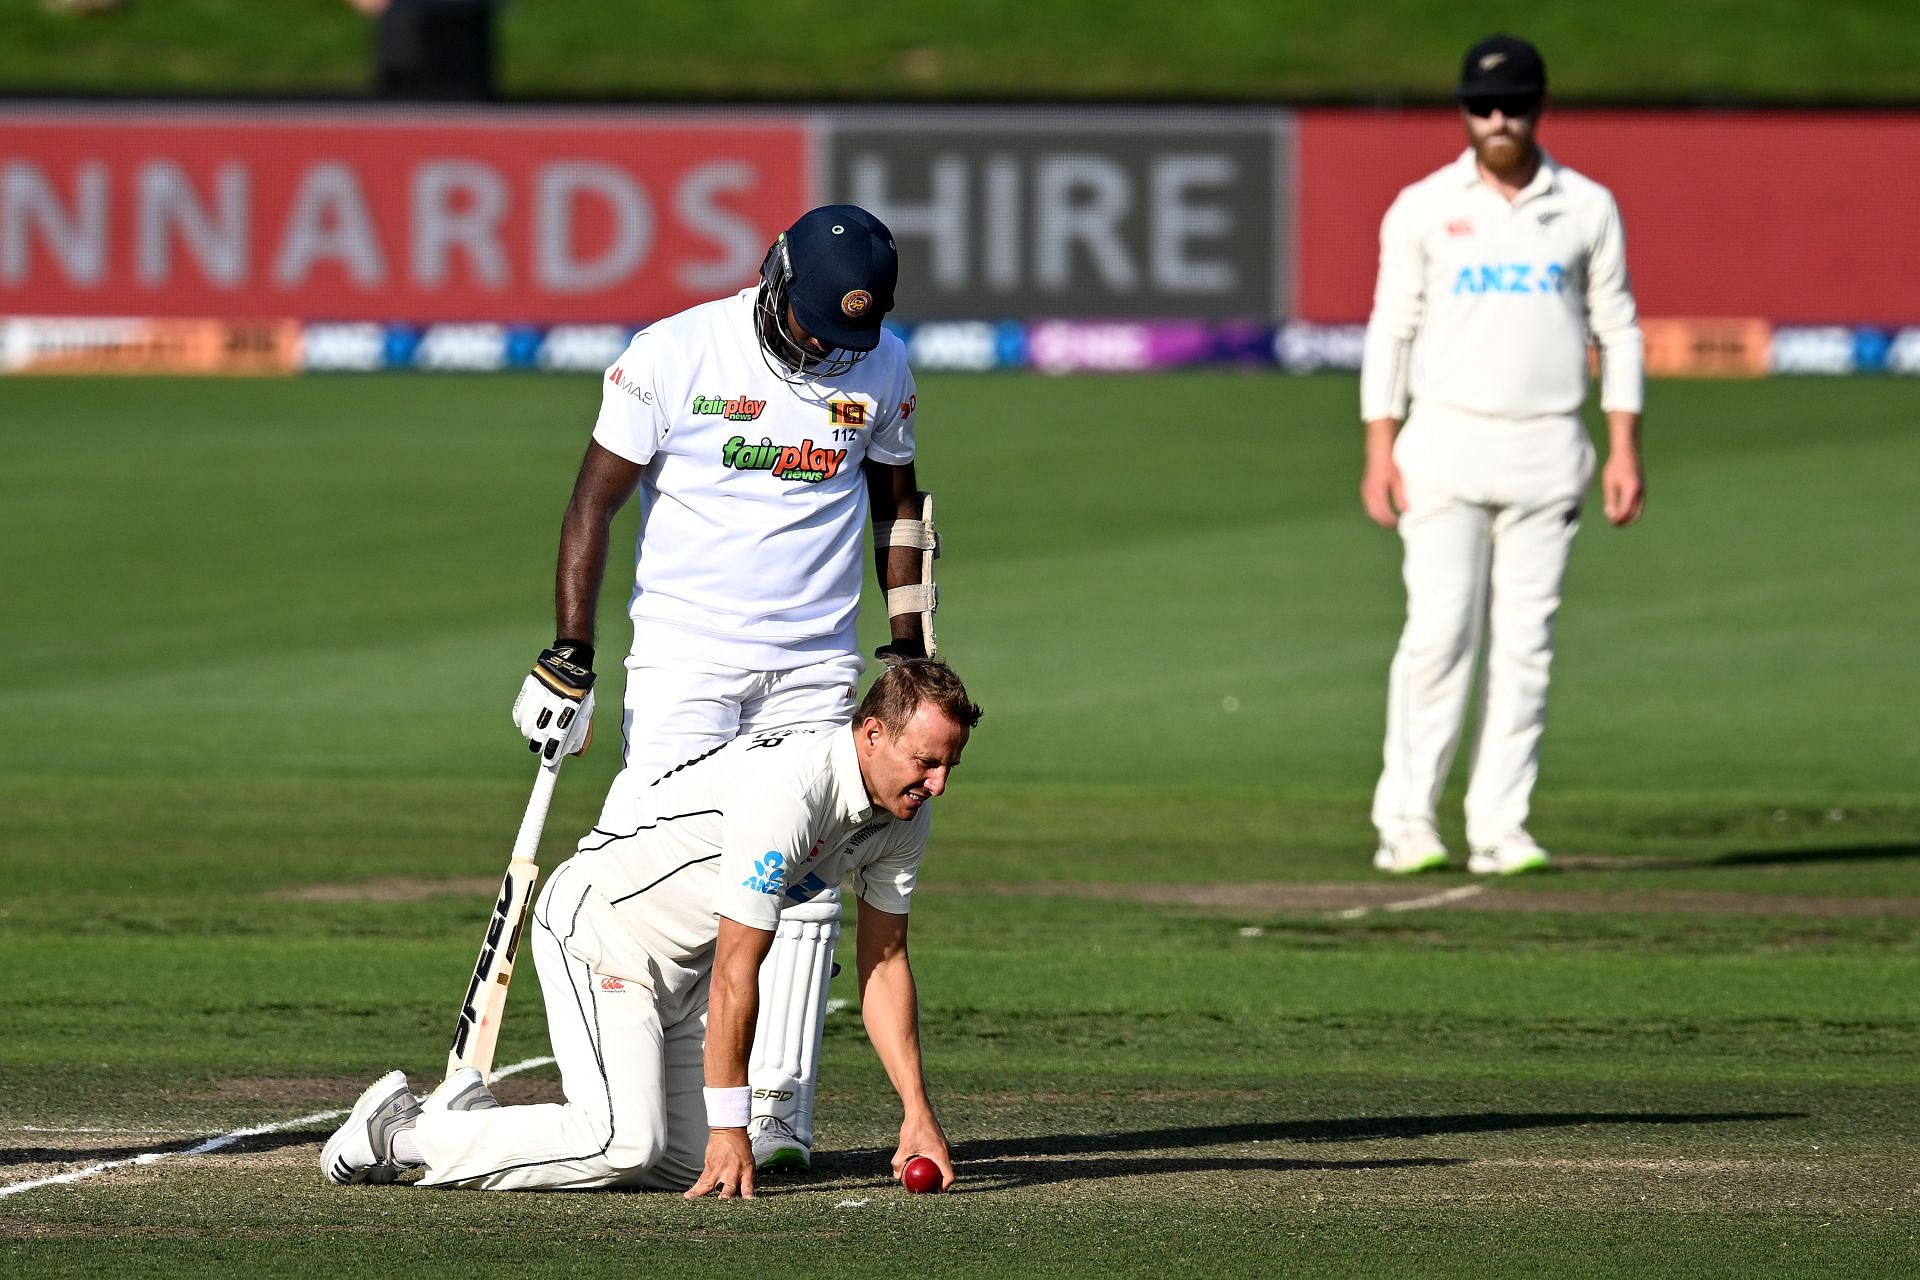 New Zealand v Sri Lanka - 1st Test: Day 3